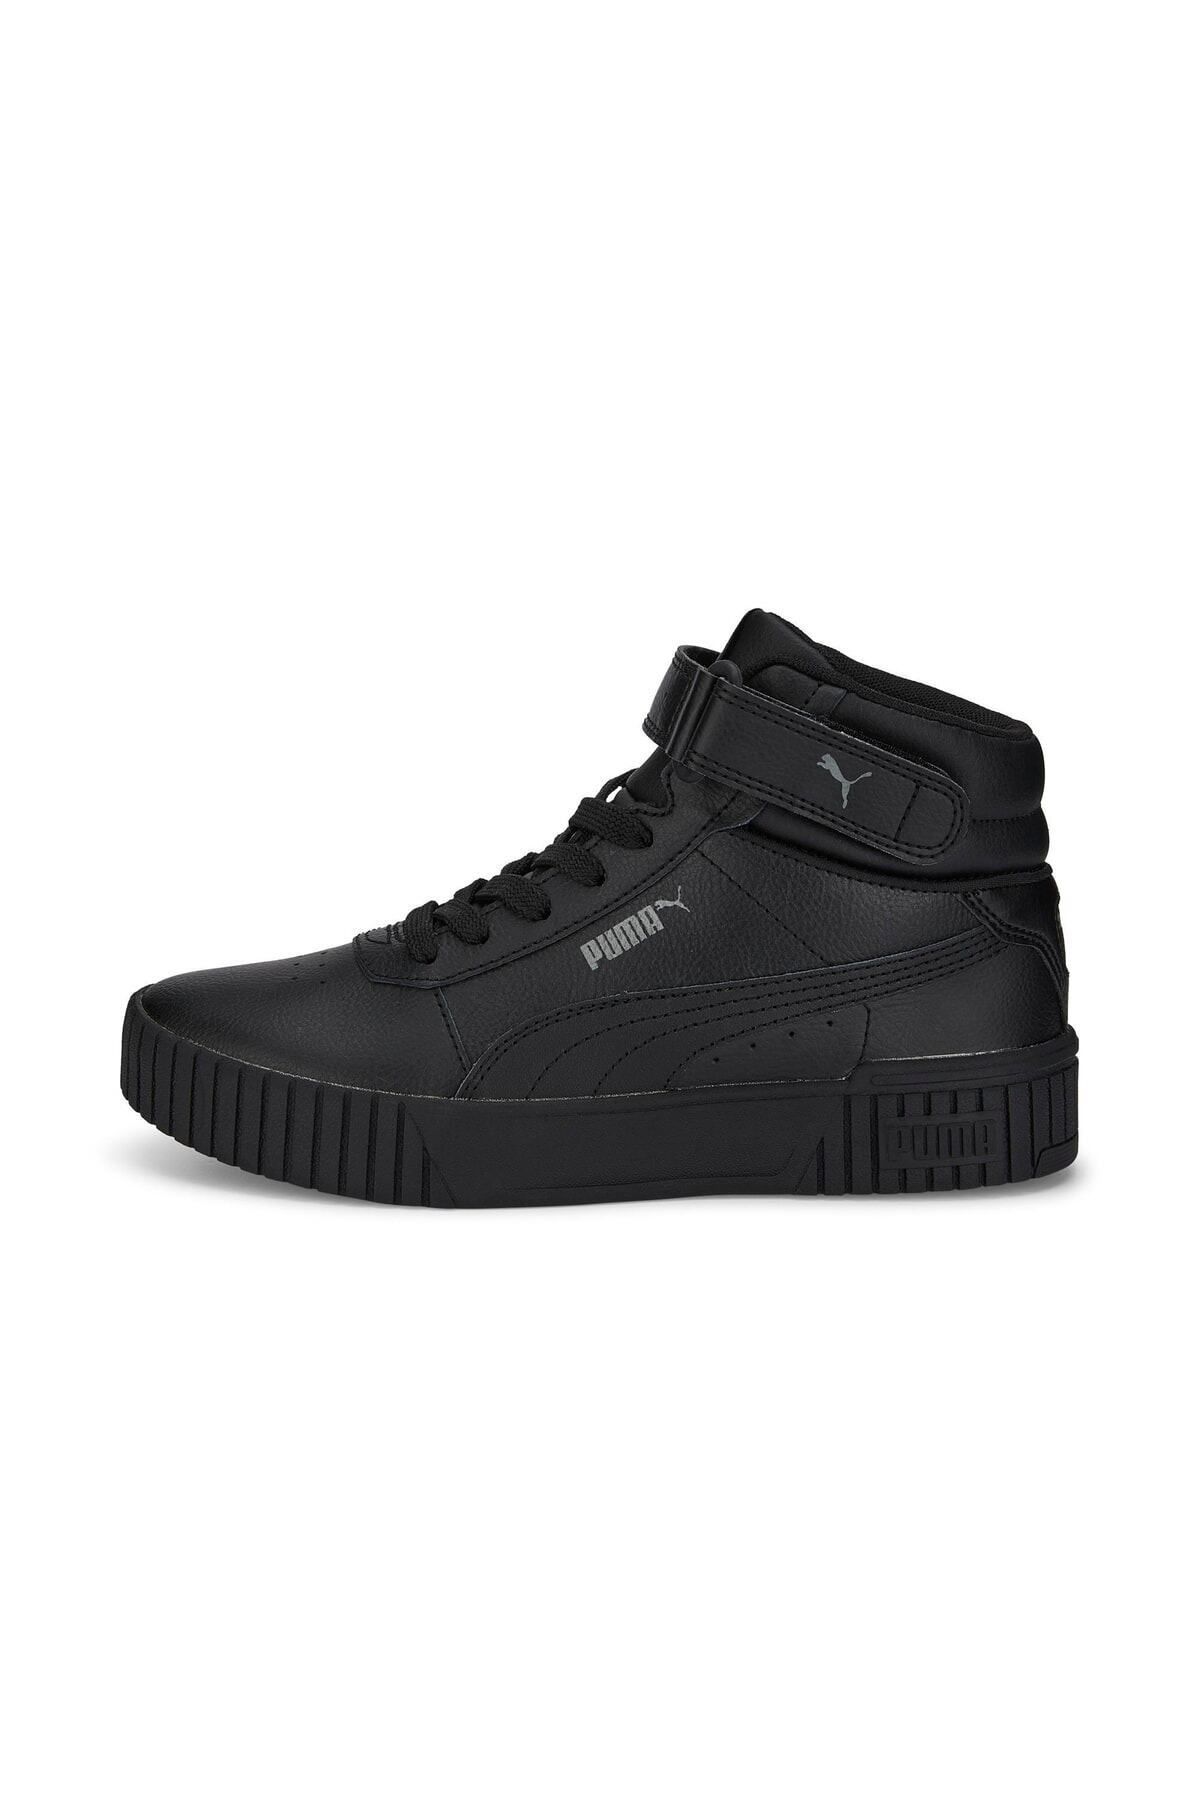 Puma Kadın Siyah Sneaker Confort New Spor Ayakkabı